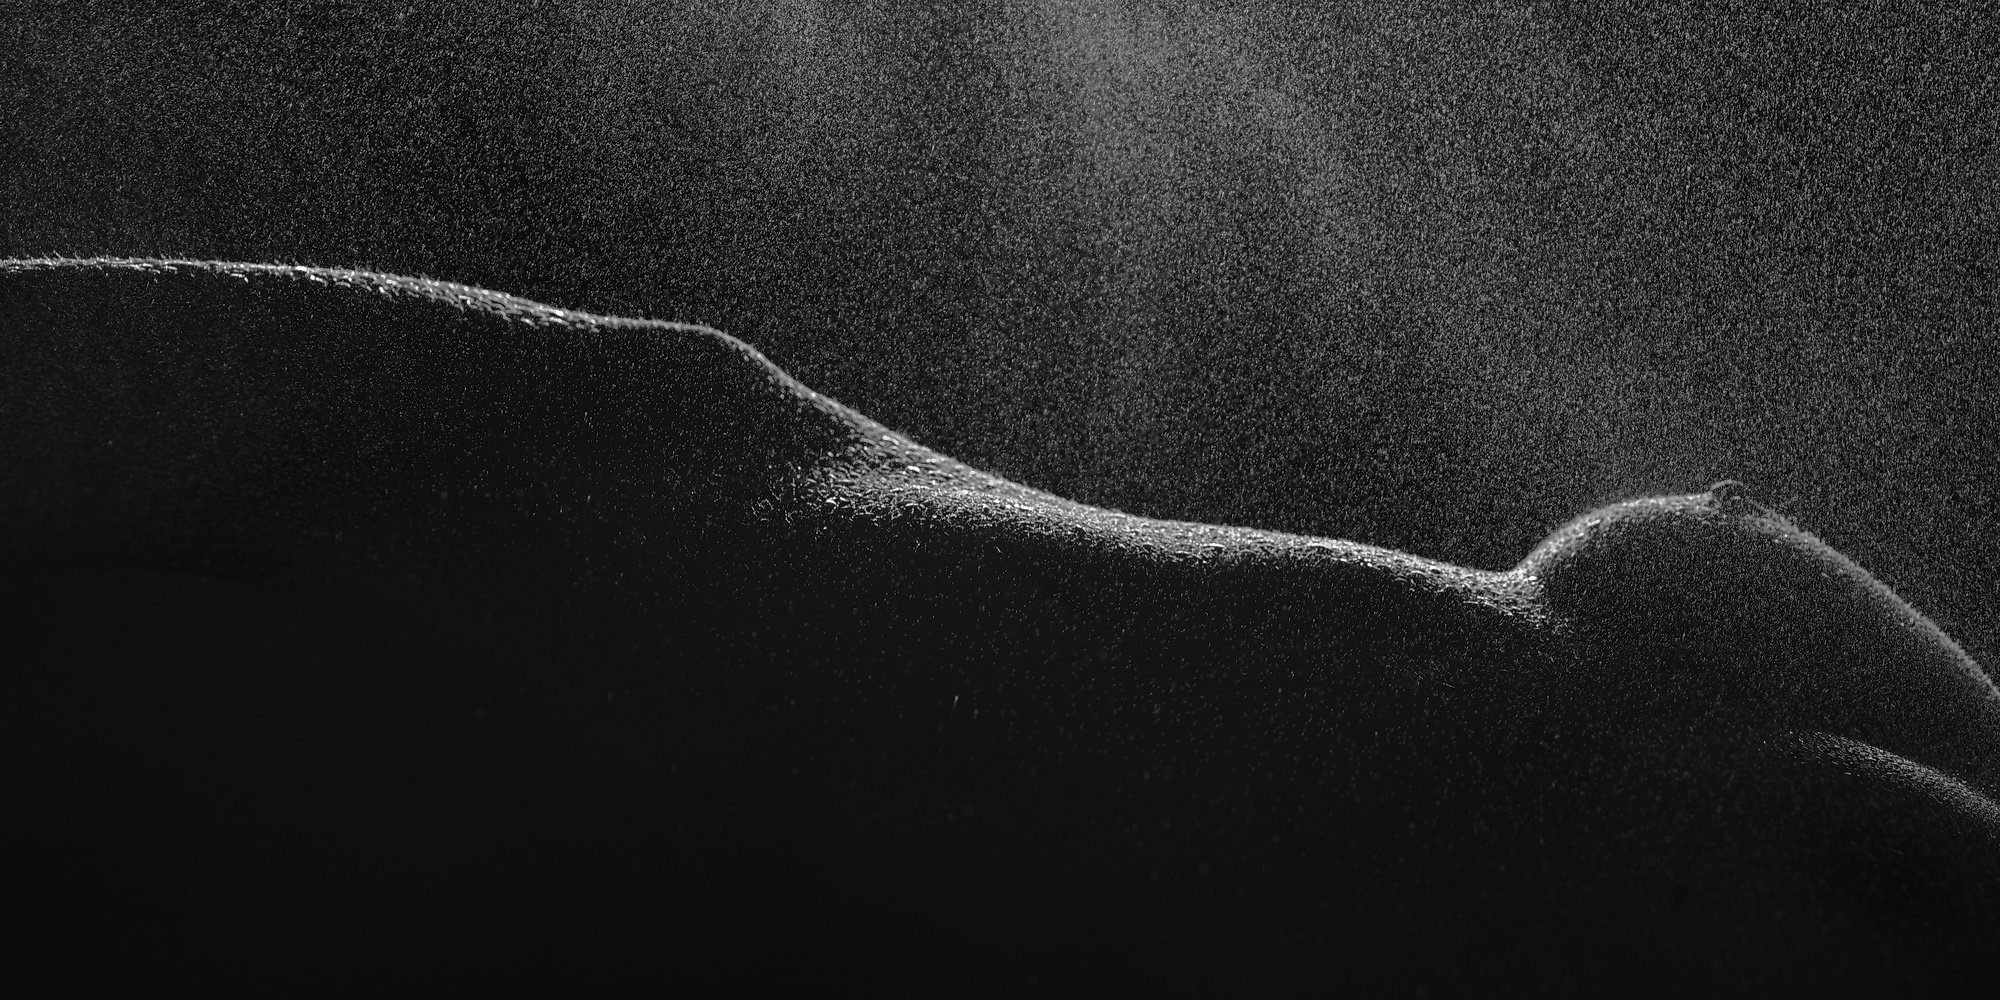 тело вода холод женщина грудь ню темнота капли талия, Михаил Землянский